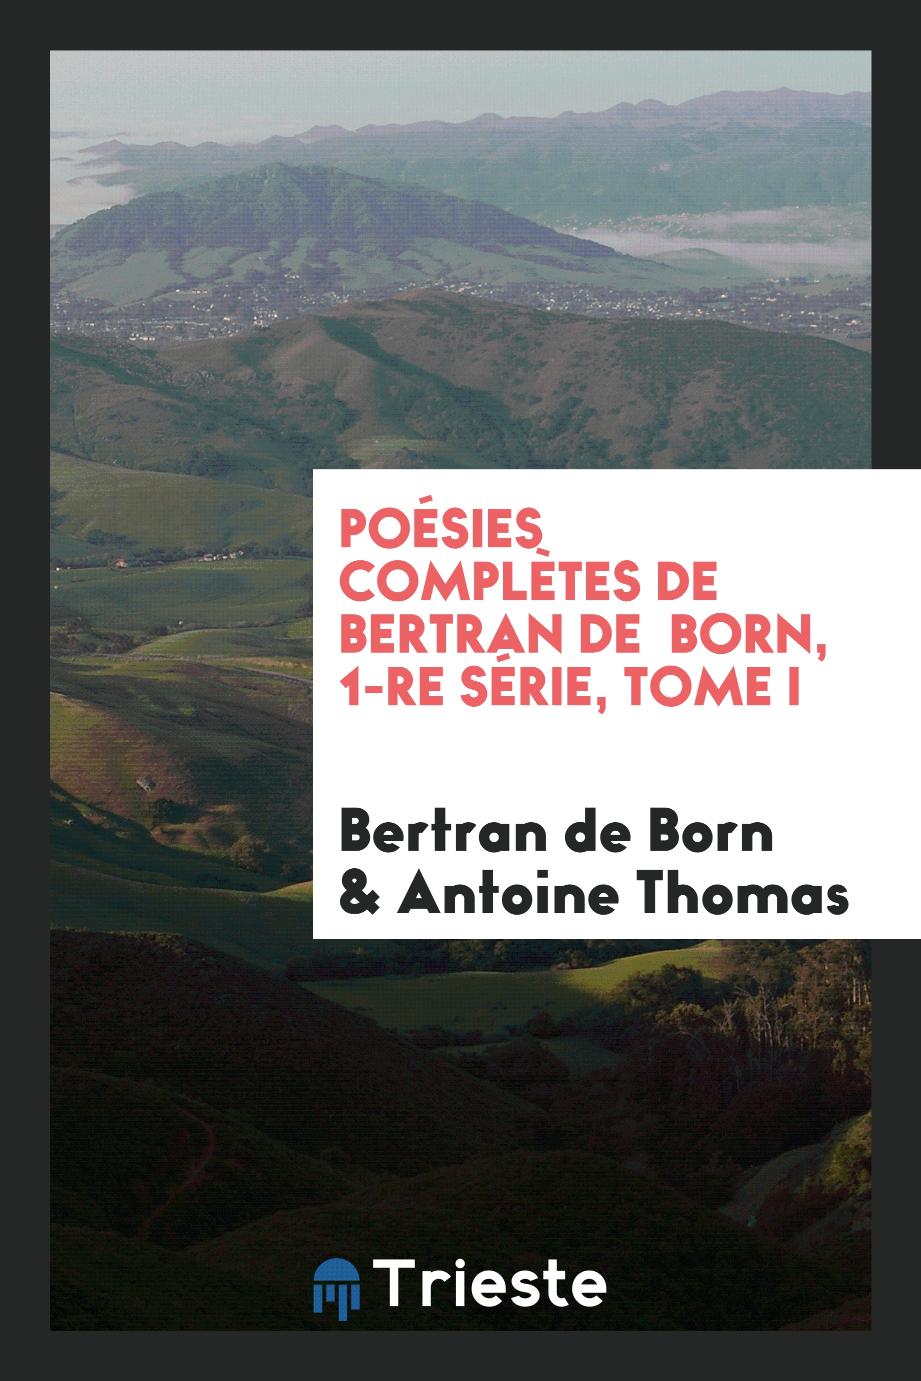 Poésies complètes de bertran de born, 1-re série, tome I